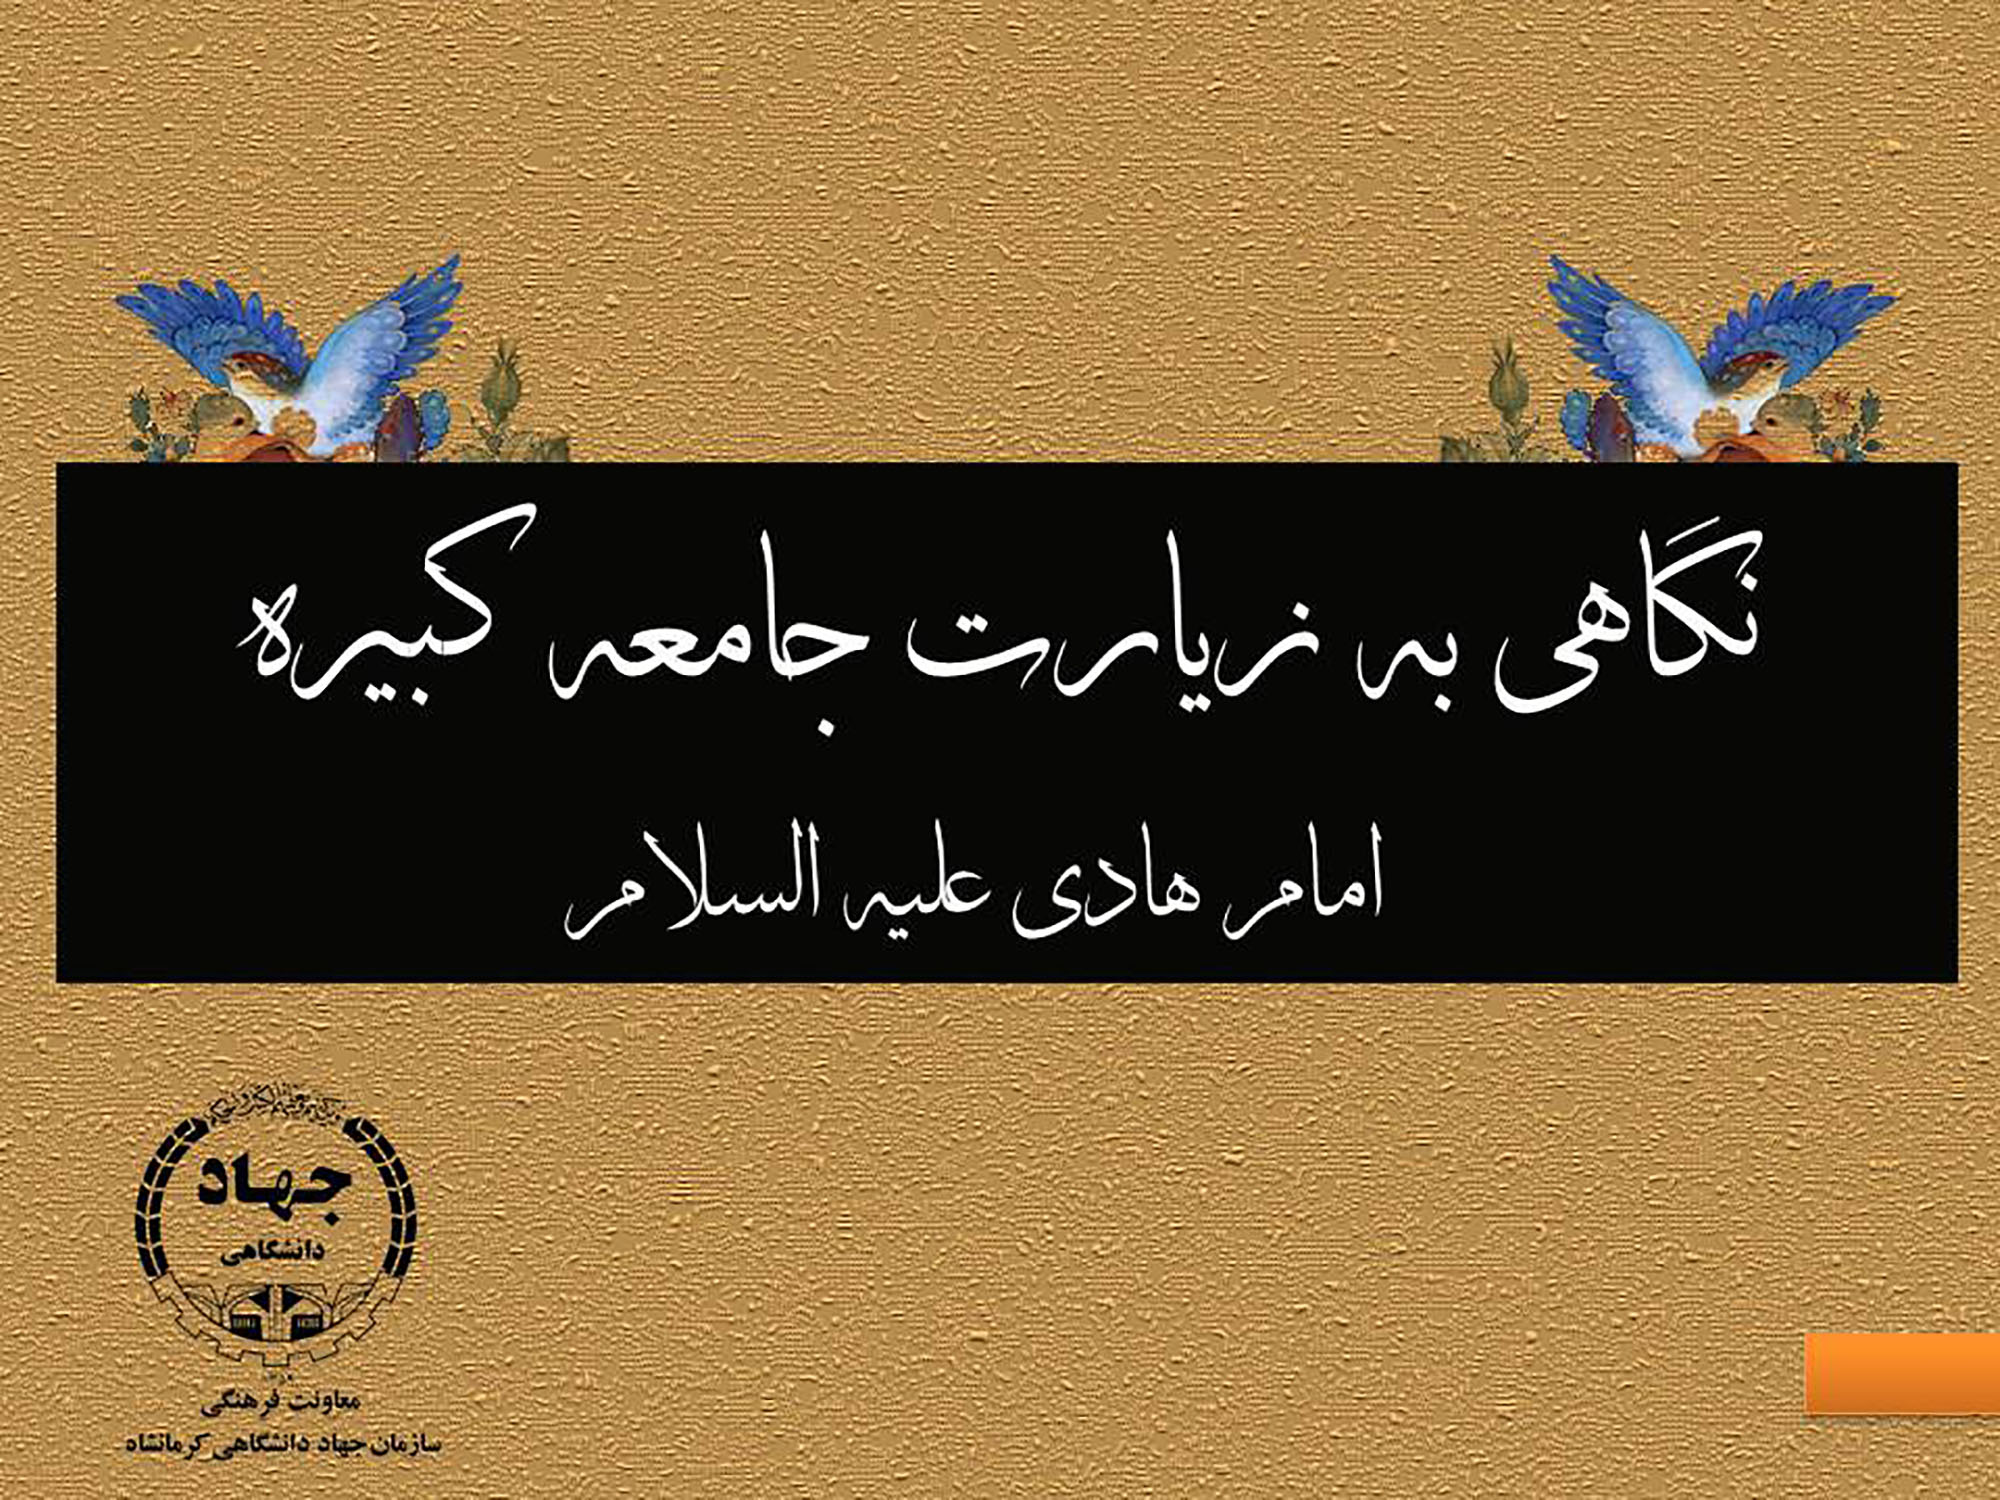 تولید محتوا با عنوان " نگاهی به زیارت جامعه کبیره امام هادی (ع) "